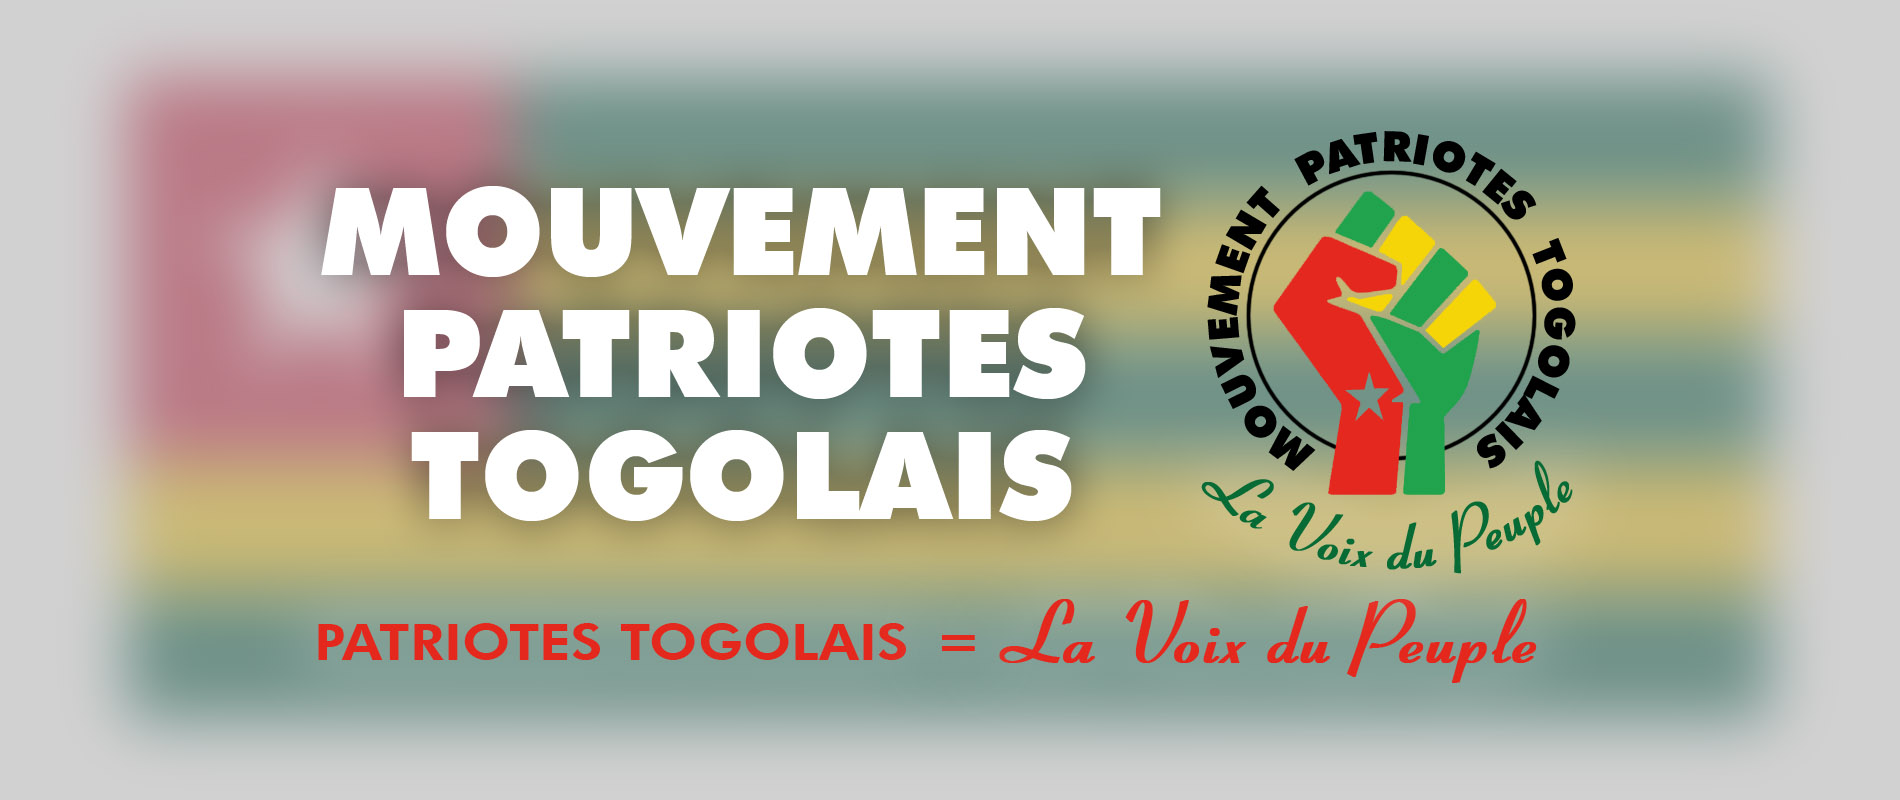 Mouvement Patriotes Togolais